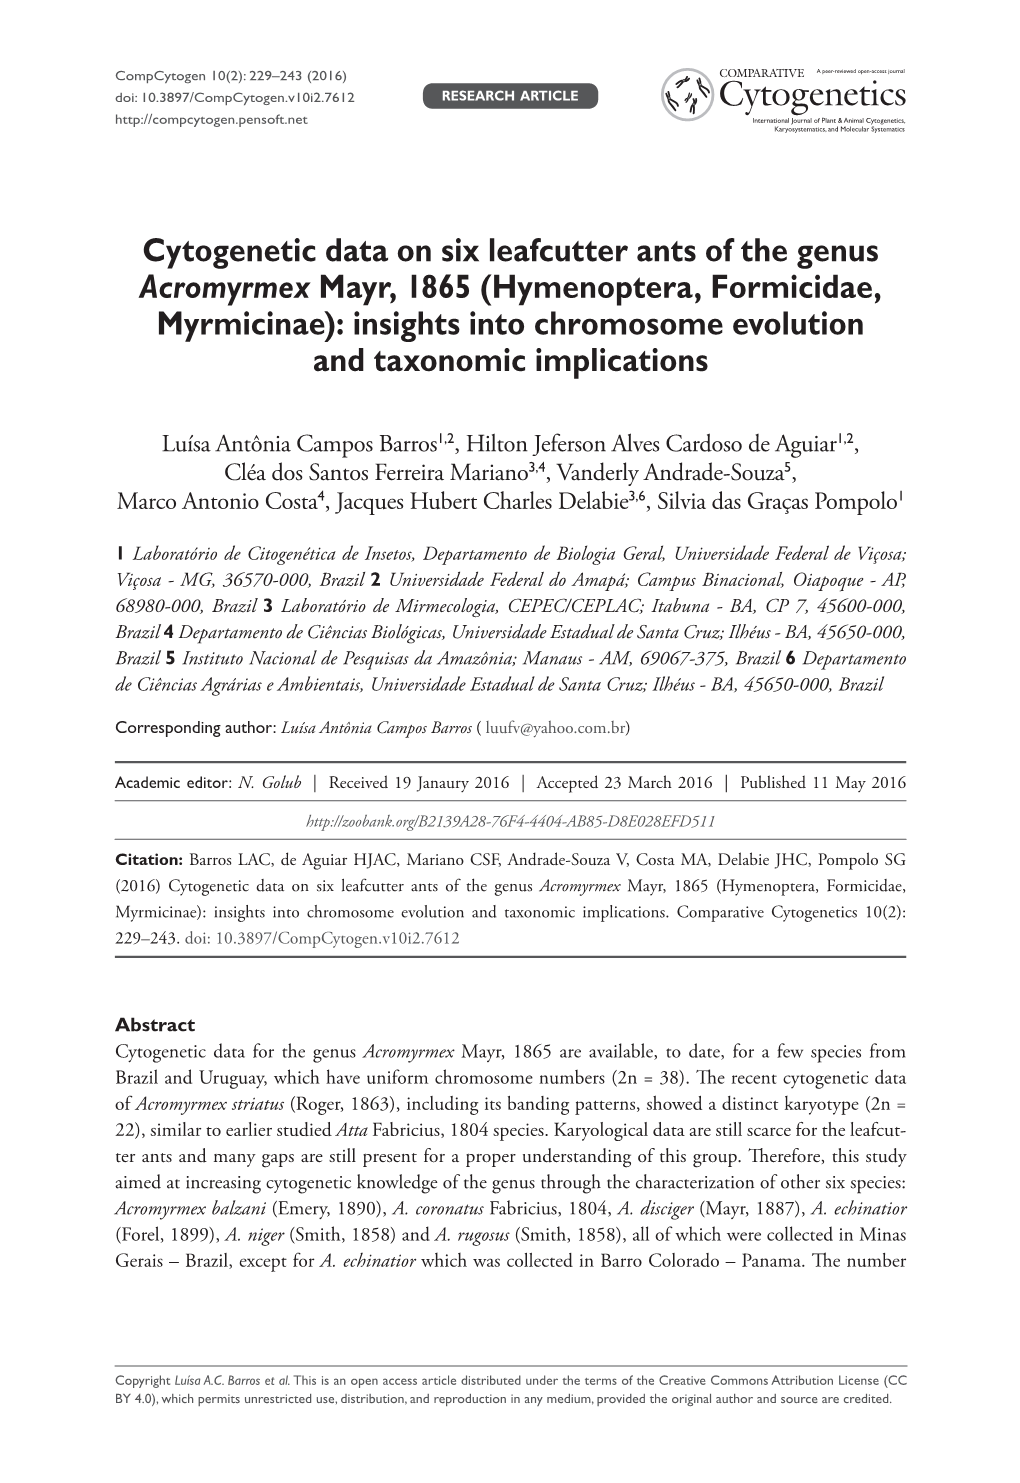 ﻿Cytogenetic Data on Six Leafcutter Ants of the Genus Acromyrmex Mayr, 1865 (Hymenoptera, Formicidae, Myrmicinae): Insights In